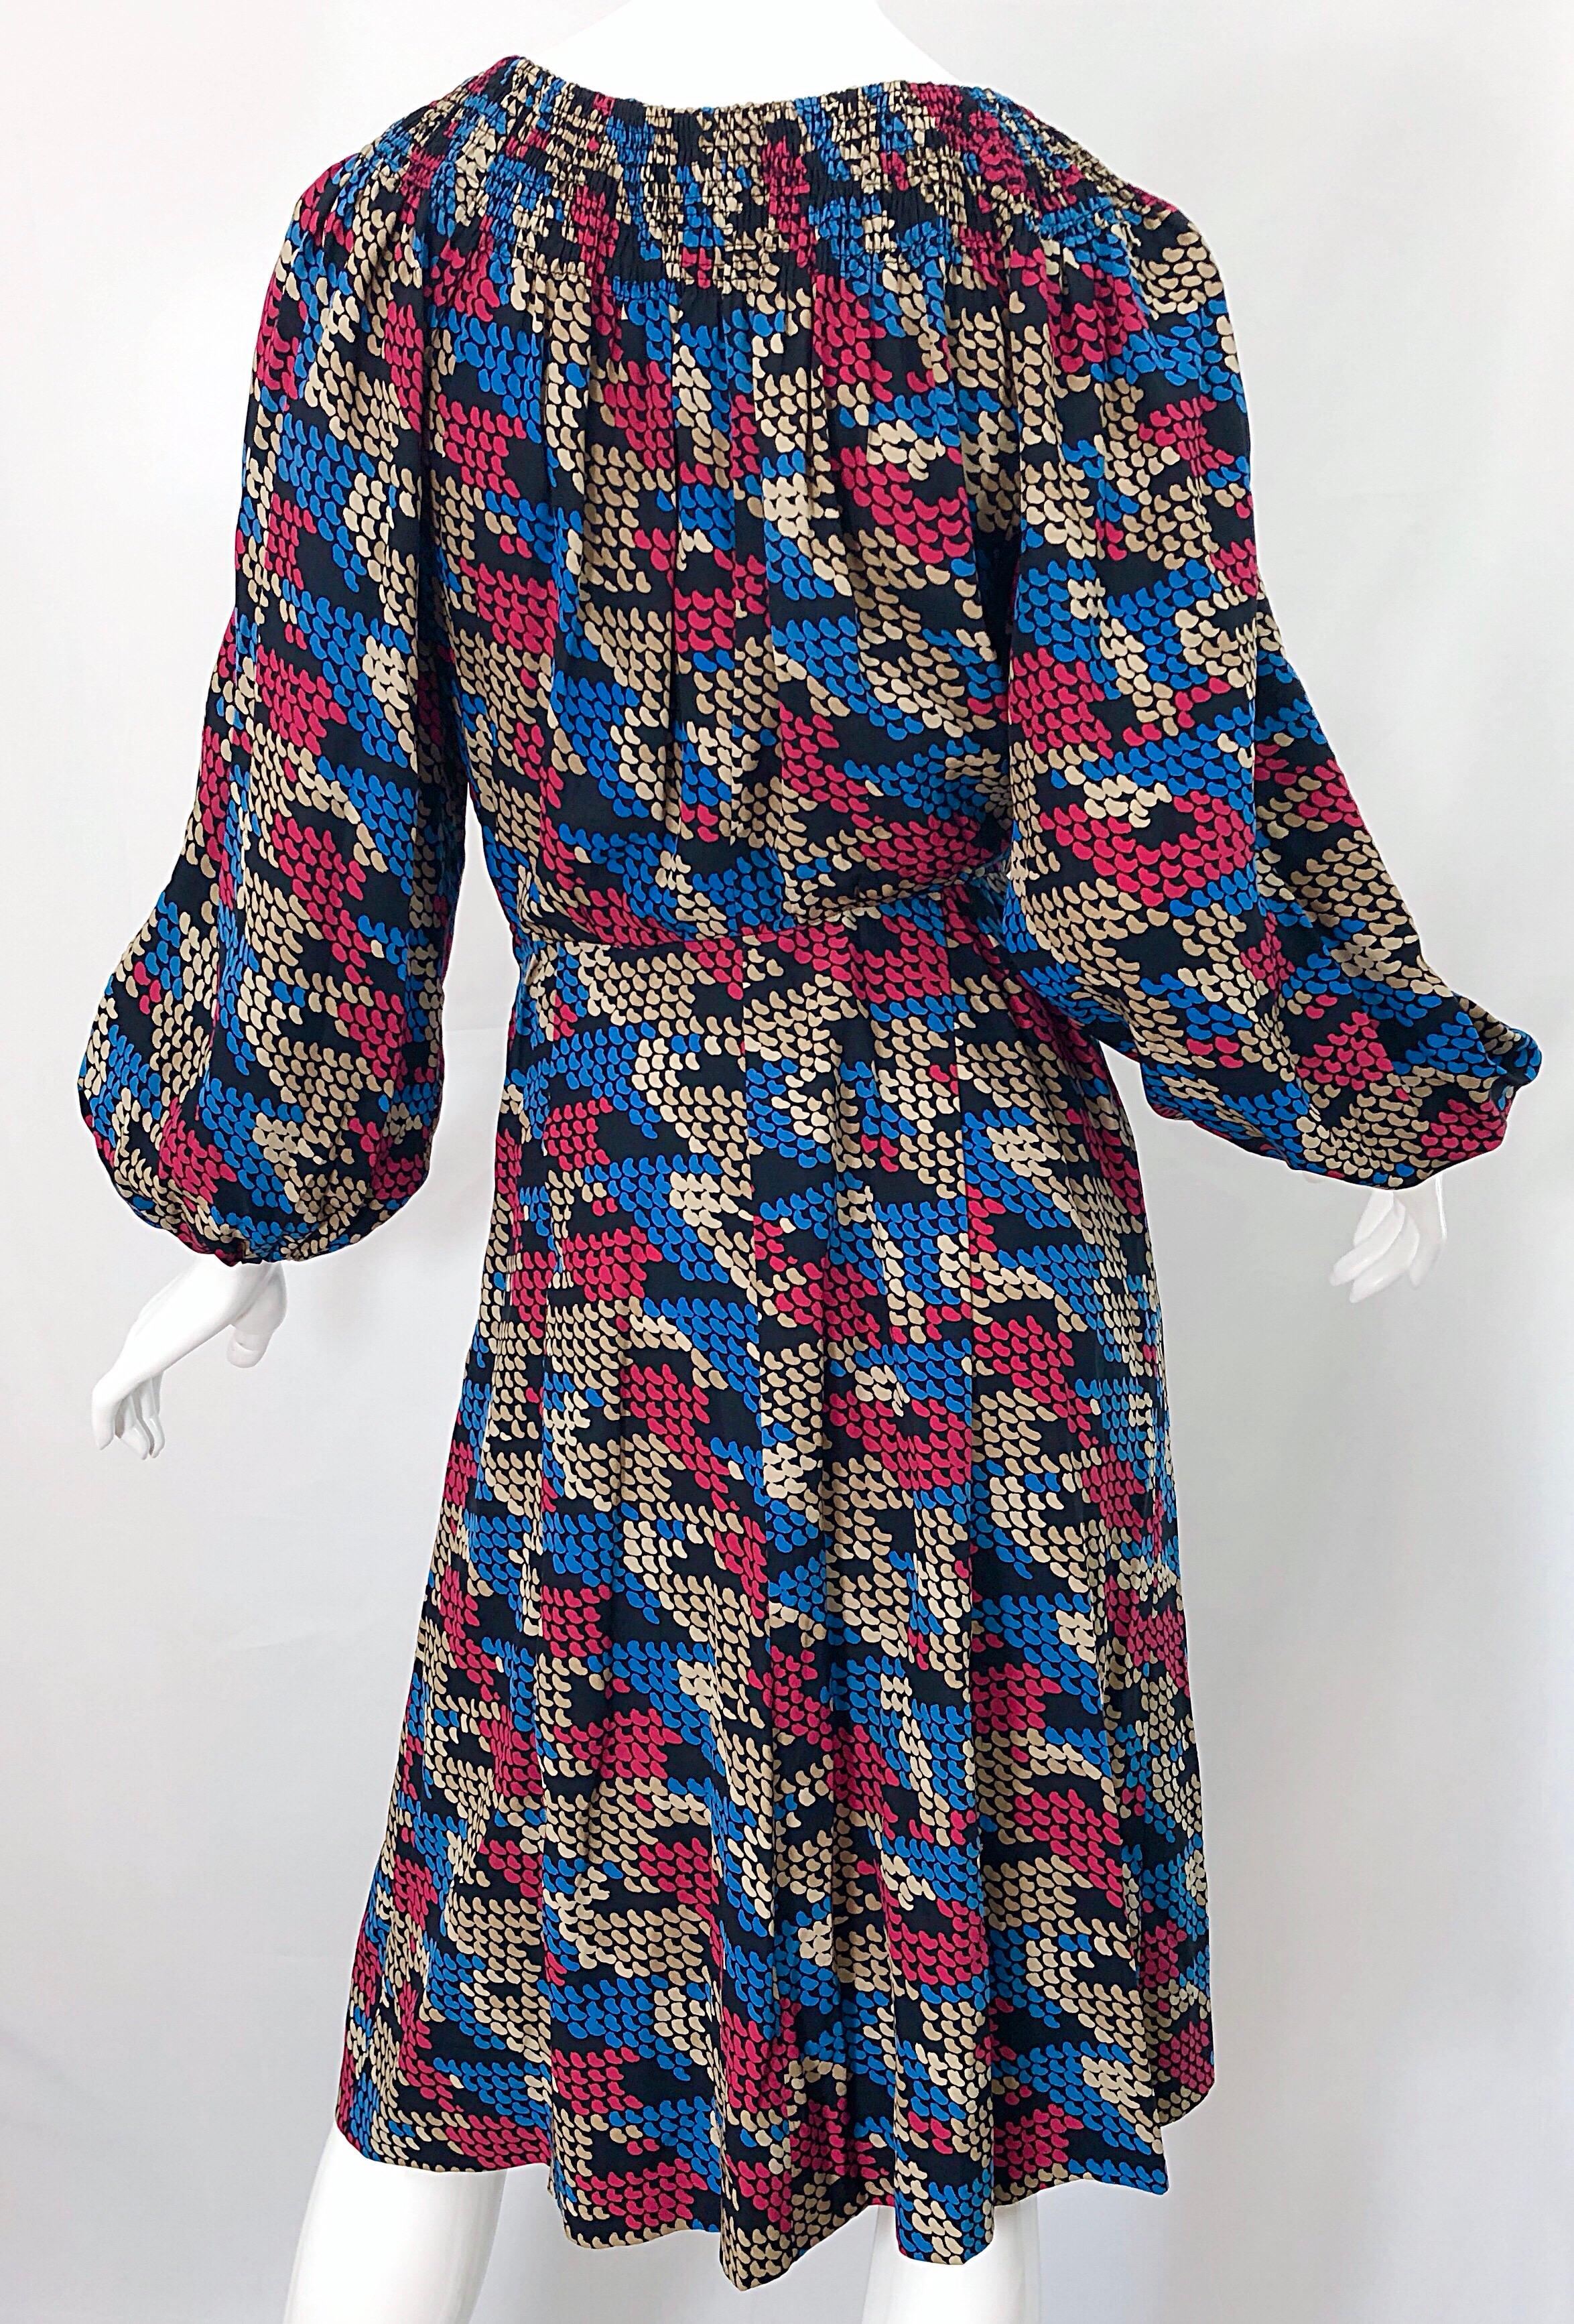 Givenchy - Robe vintage haute couture à manches bouffantes et pied-de-poule exagérées, années 1970 Pour femmes en vente